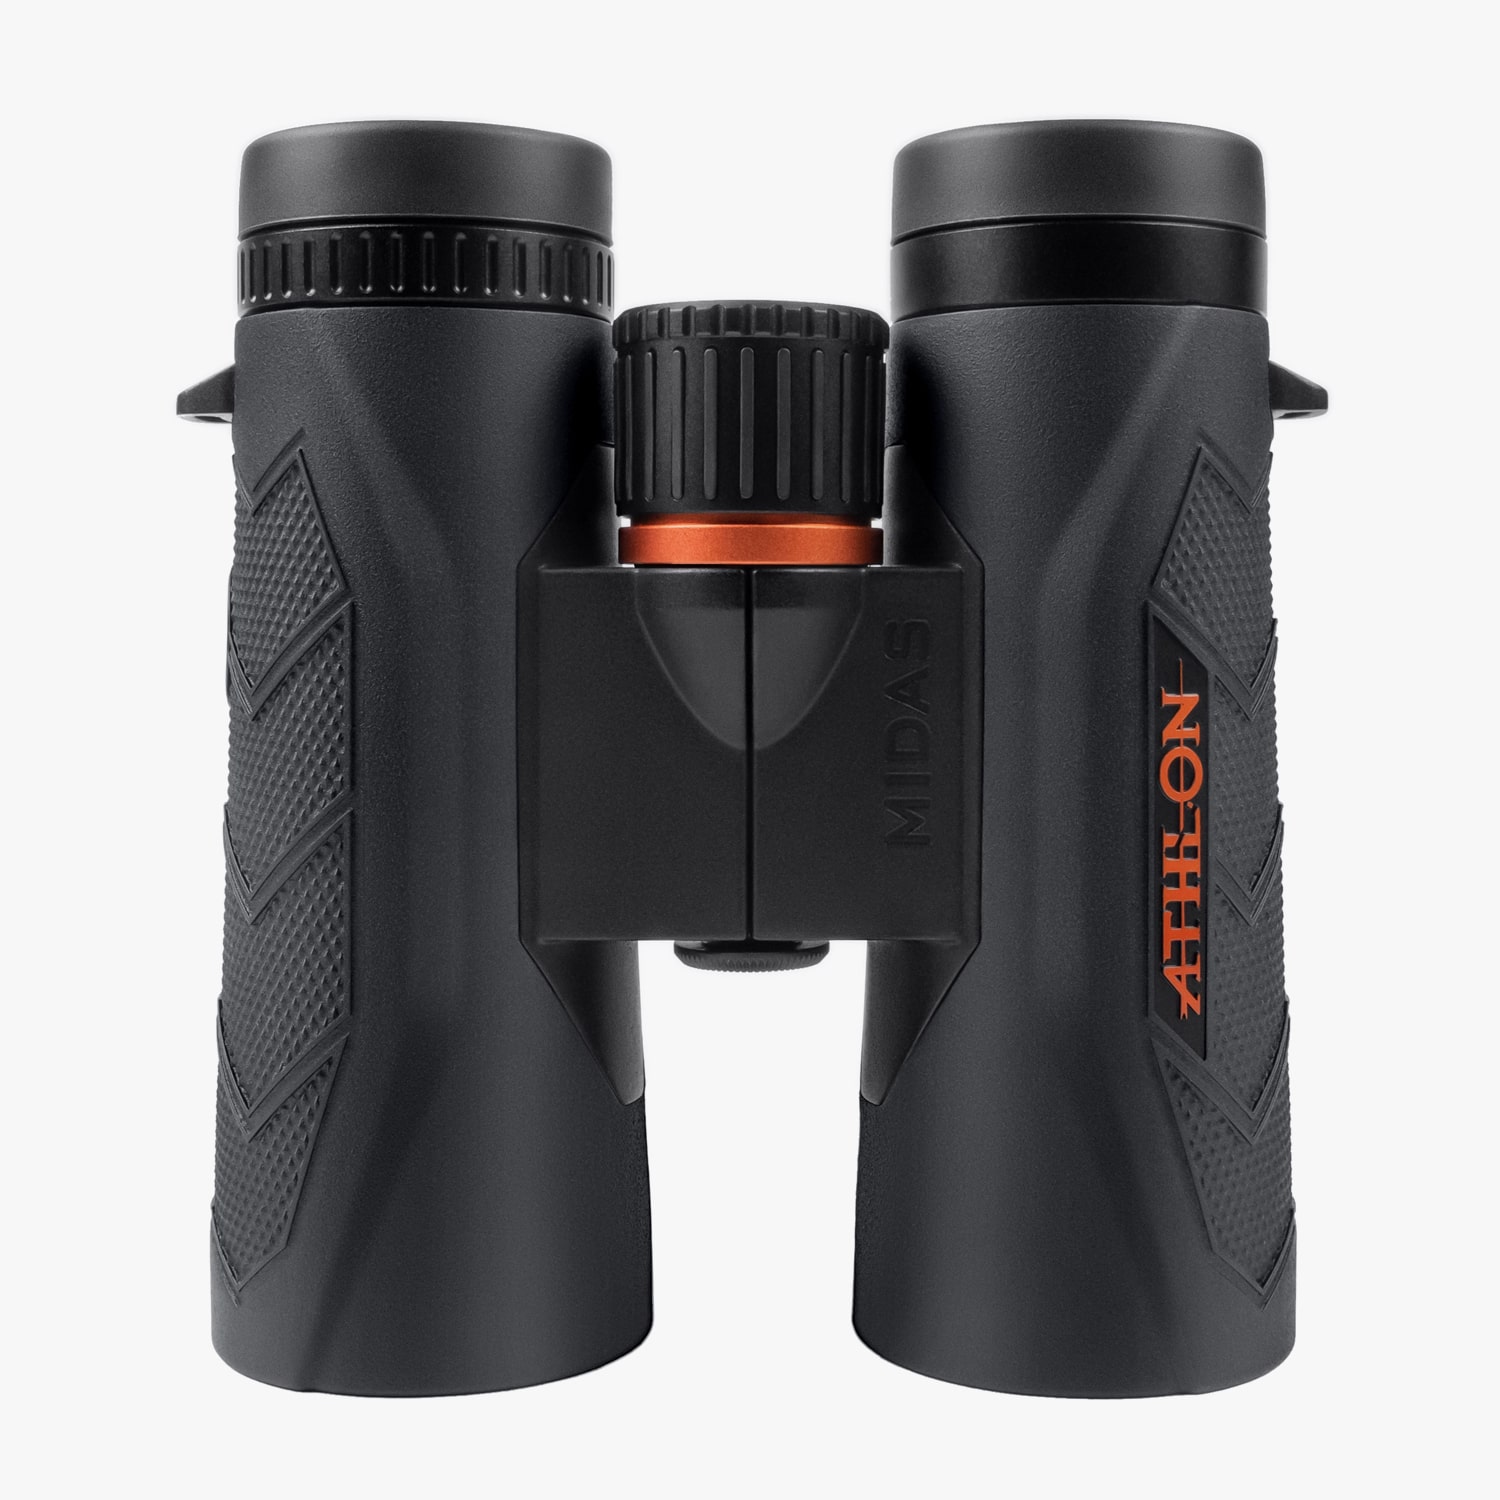 Midas 8x42 Binoculars for Birding from Athlon Optics